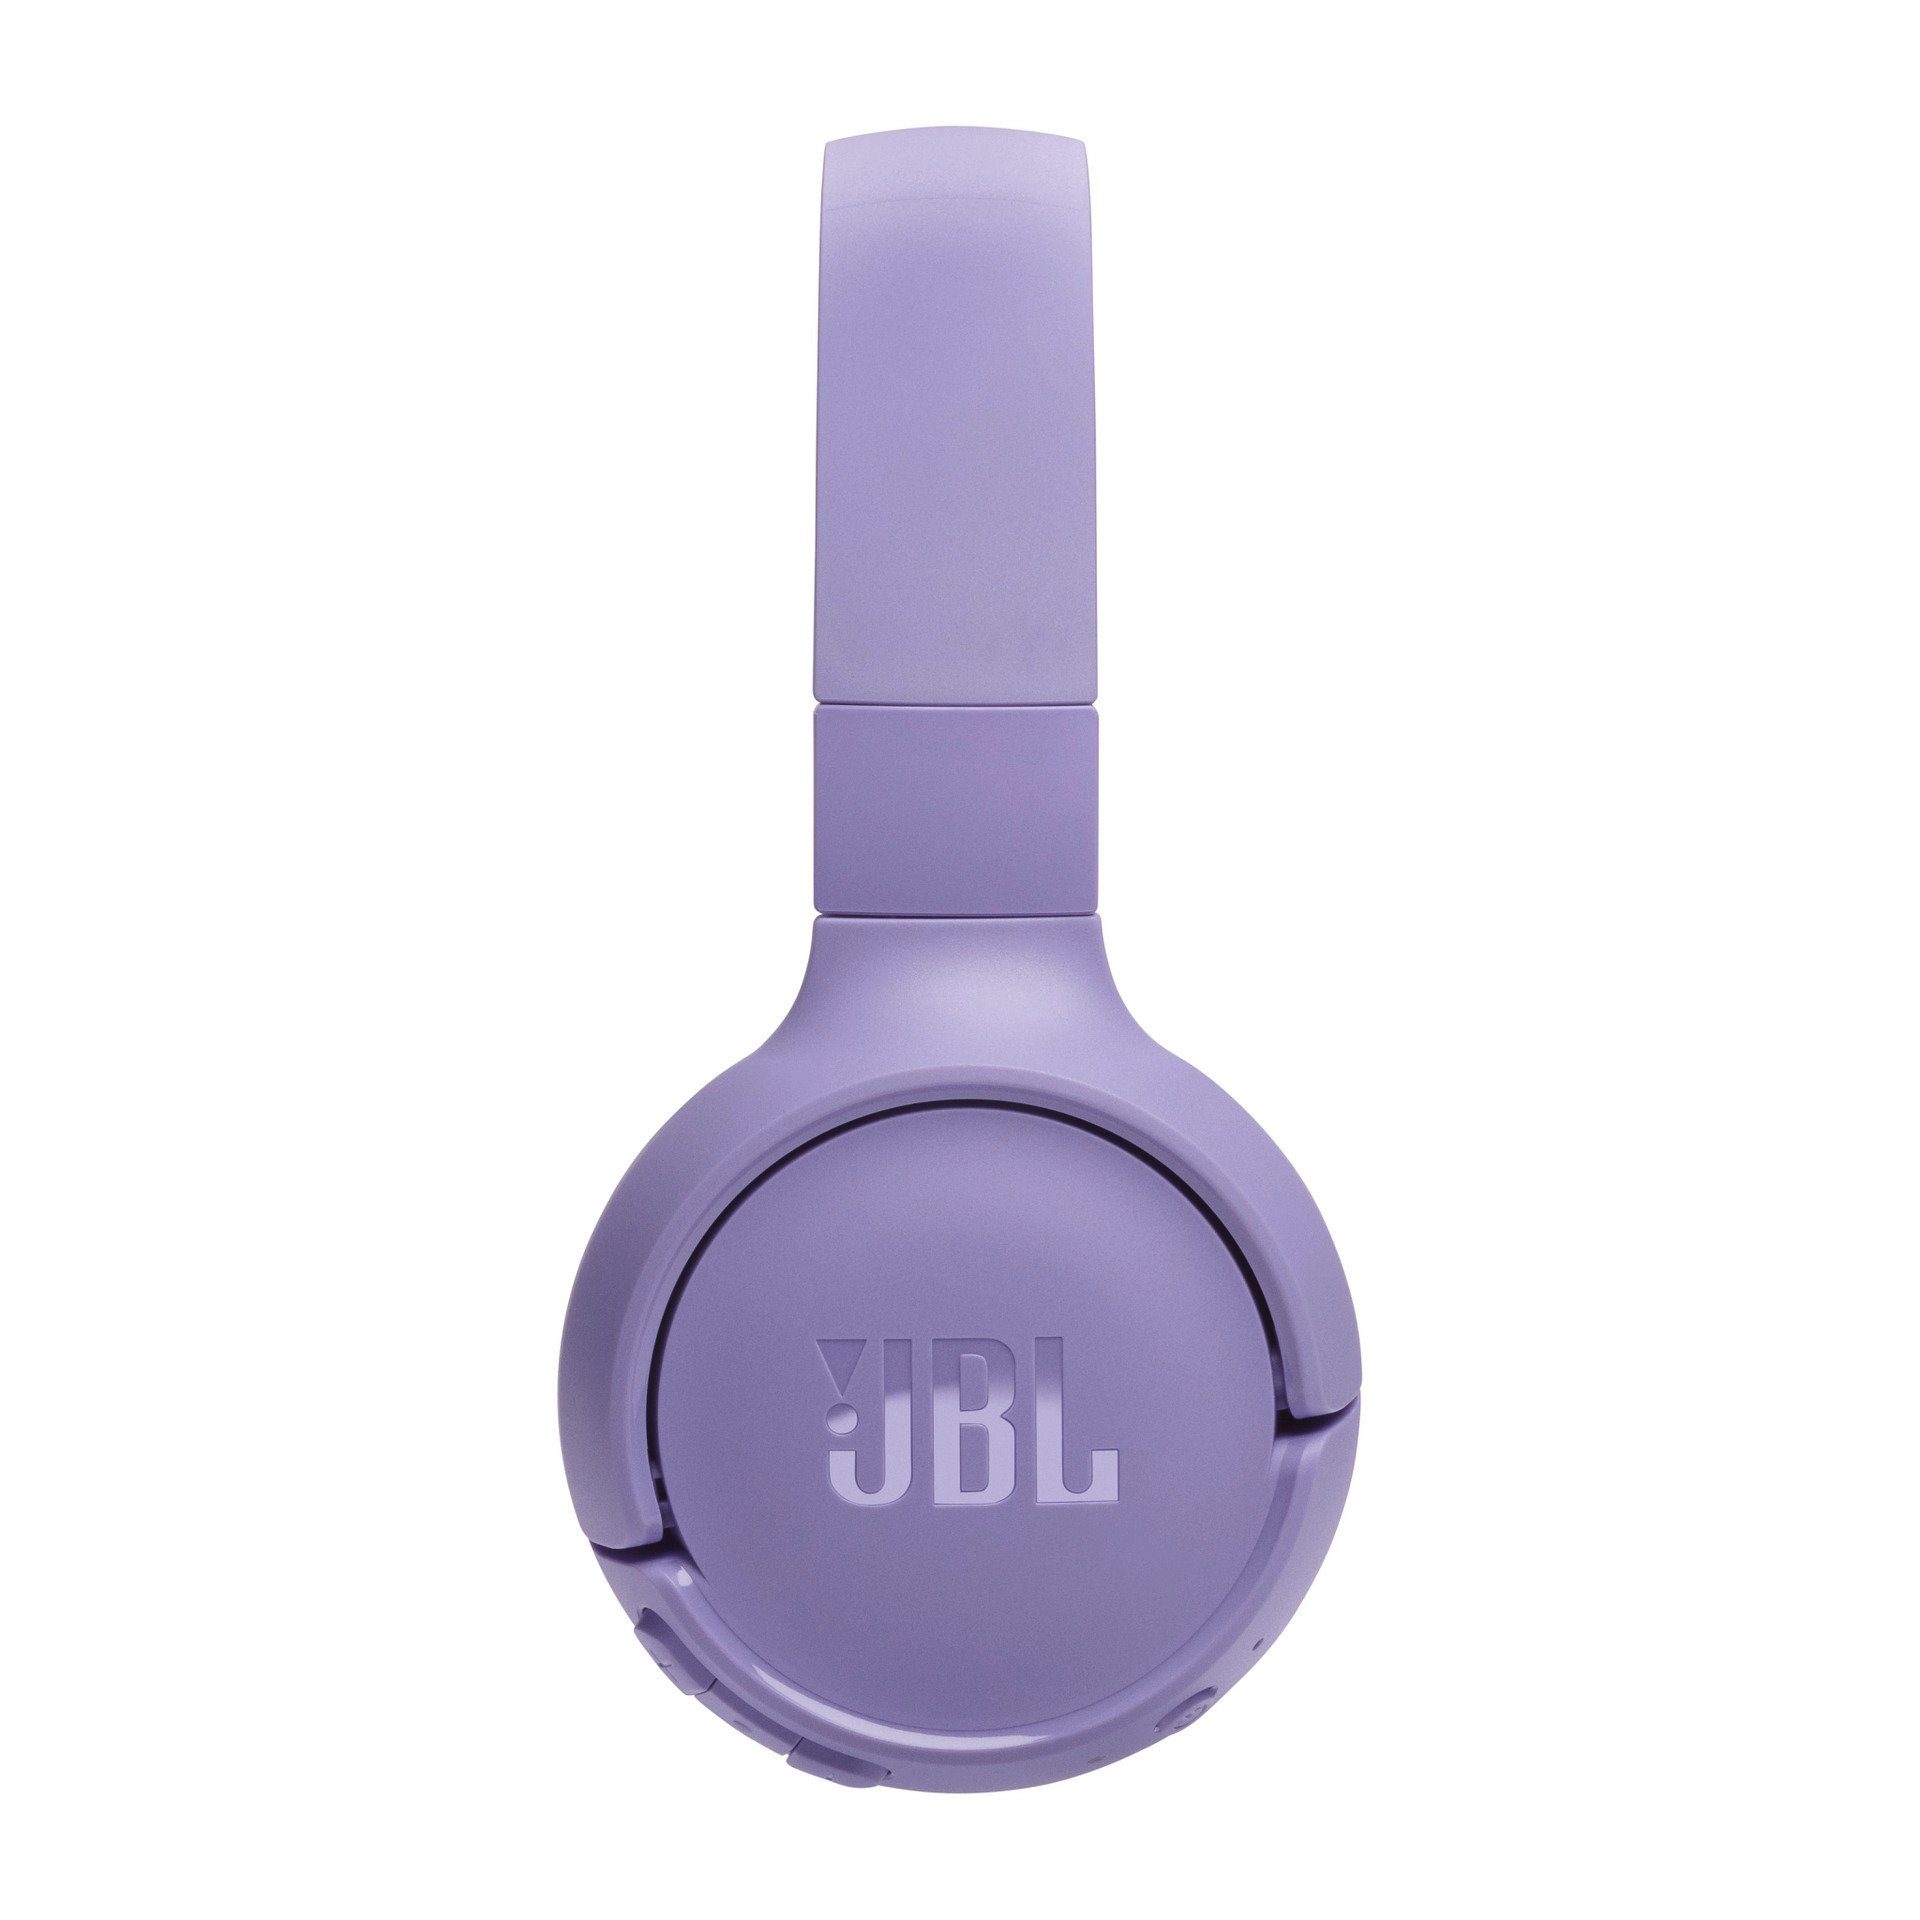 Over-Ear-Kopfhörer 520 Tune BT JBL Lila